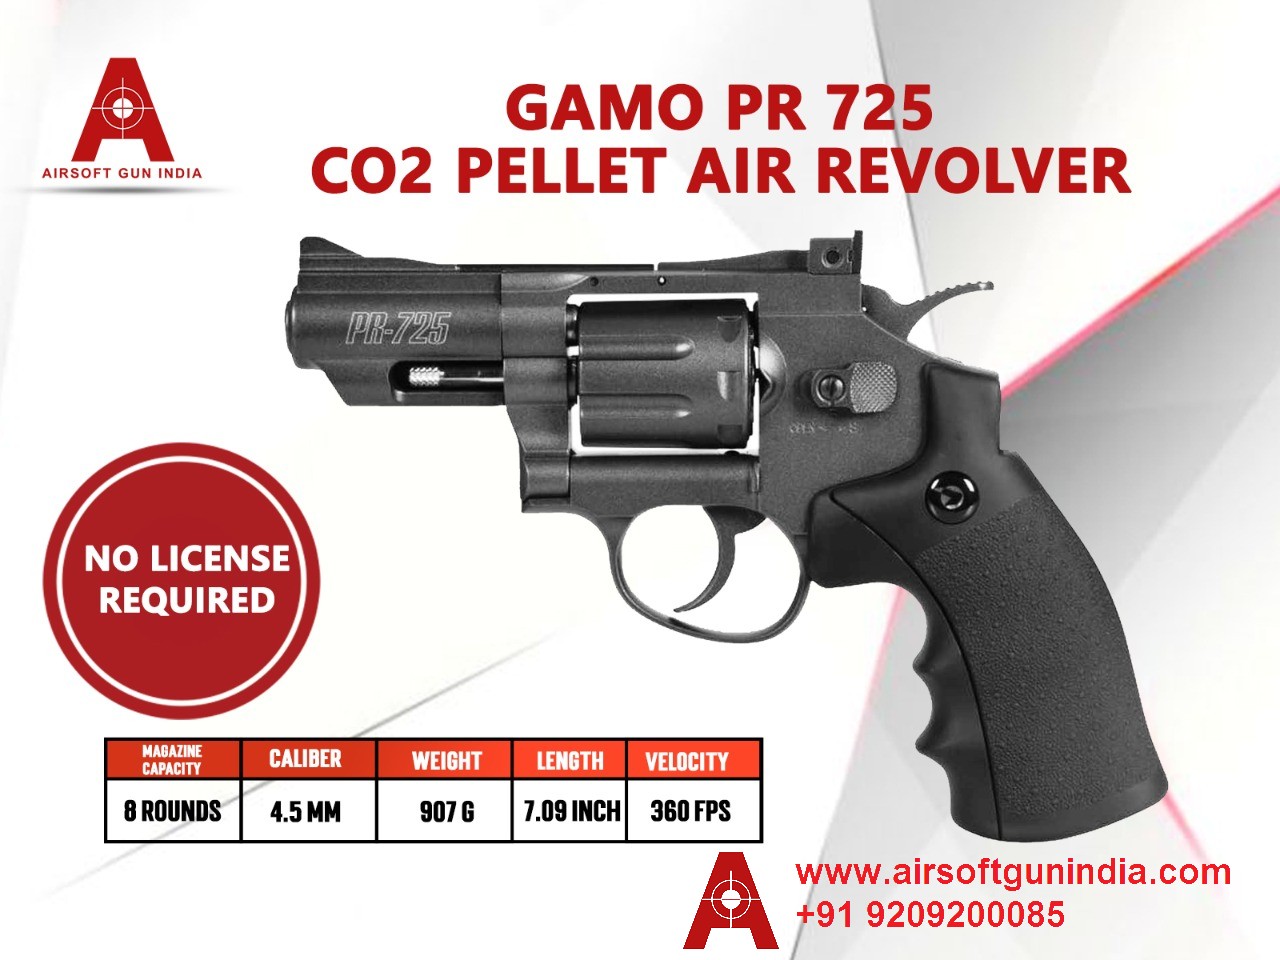 GAMO PR 725 Co2 Pellets .177Cal, 4.5mm Air Revolver By Airsoft Gun India